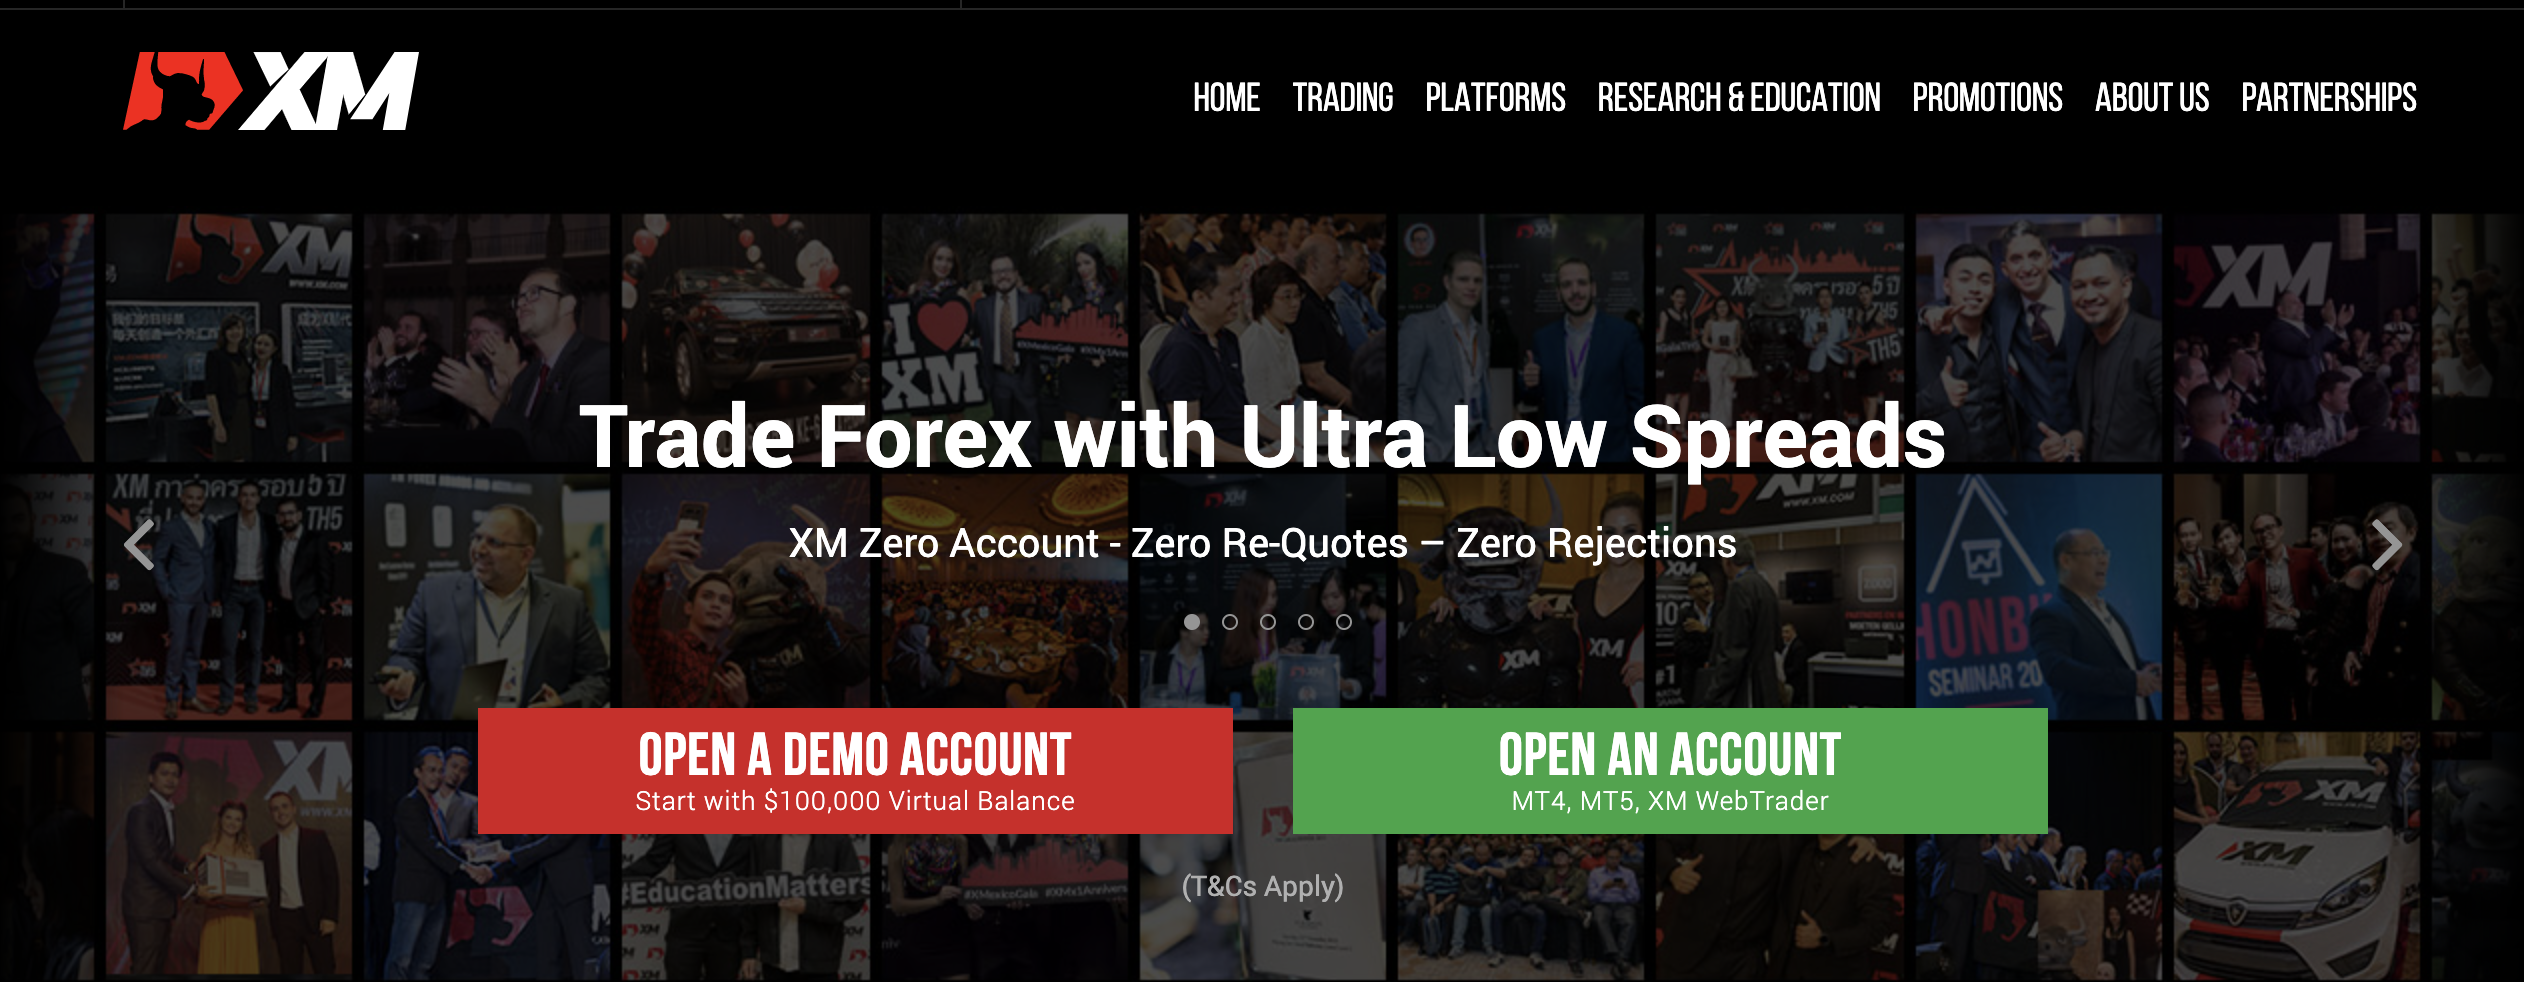 外国為替ブローカーXMの公式ウェブサイト